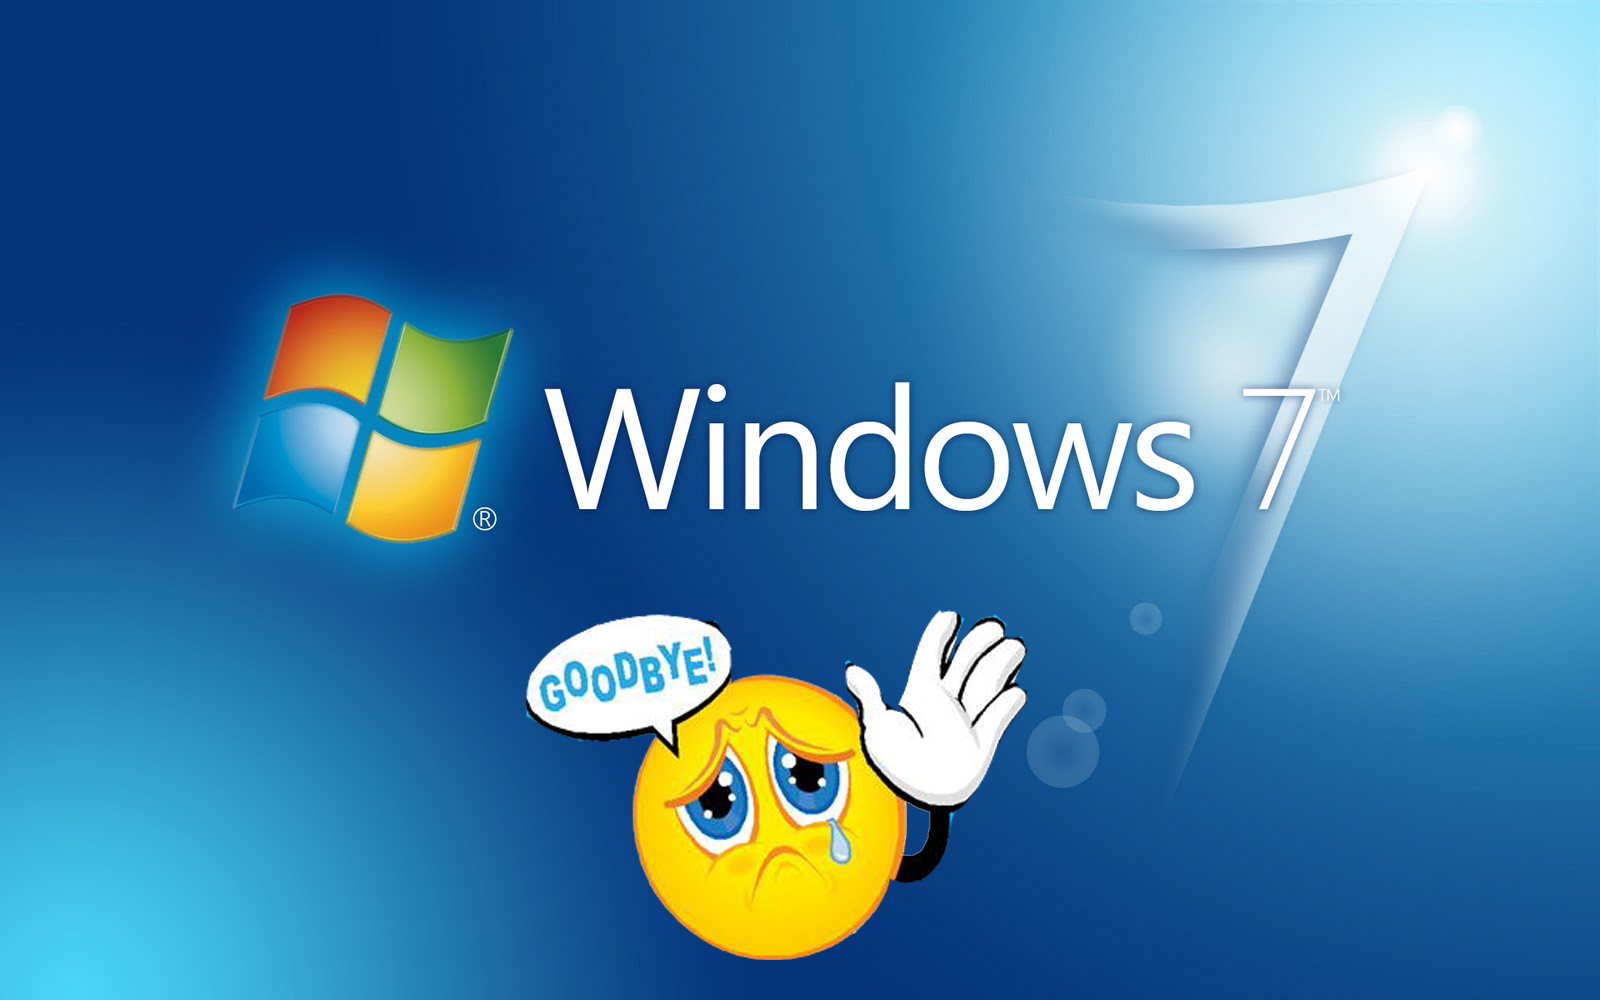 Windows 7 chính thức bị Microsoft khai tử từ hôm nay